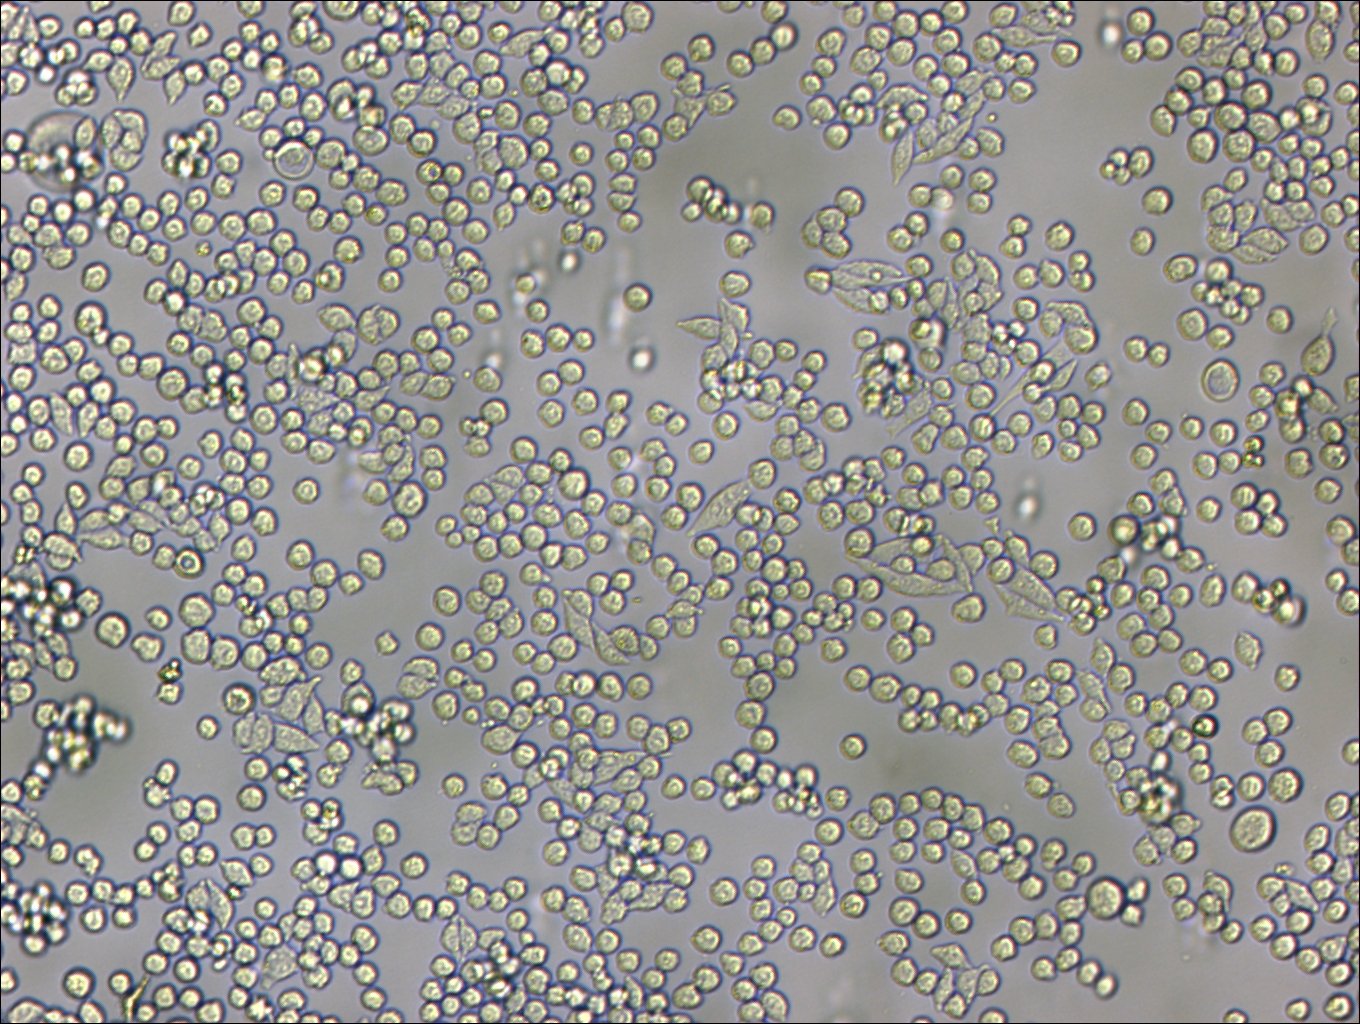 L6565 Cells